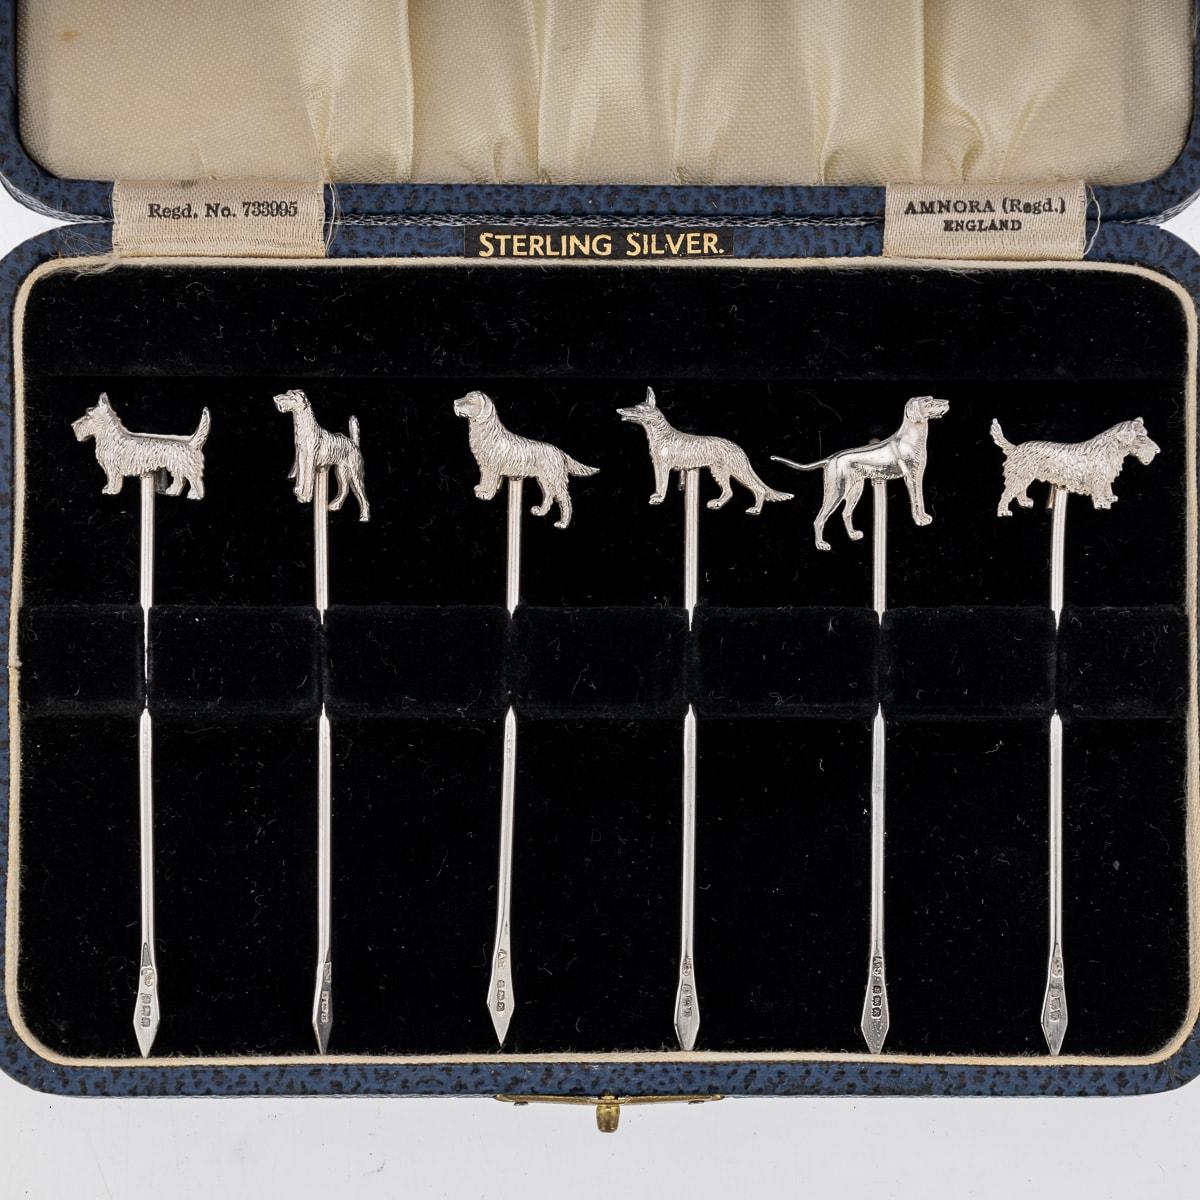 Ensemble de six pics à cocktail anciens en argent massif du 20e siècle de George V, montés avec des modèles en fonte de différentes races de chiens. L'ensemble est livré dans sa boîte d'origine en similicuir et doublée de velours. Chaque pièce est